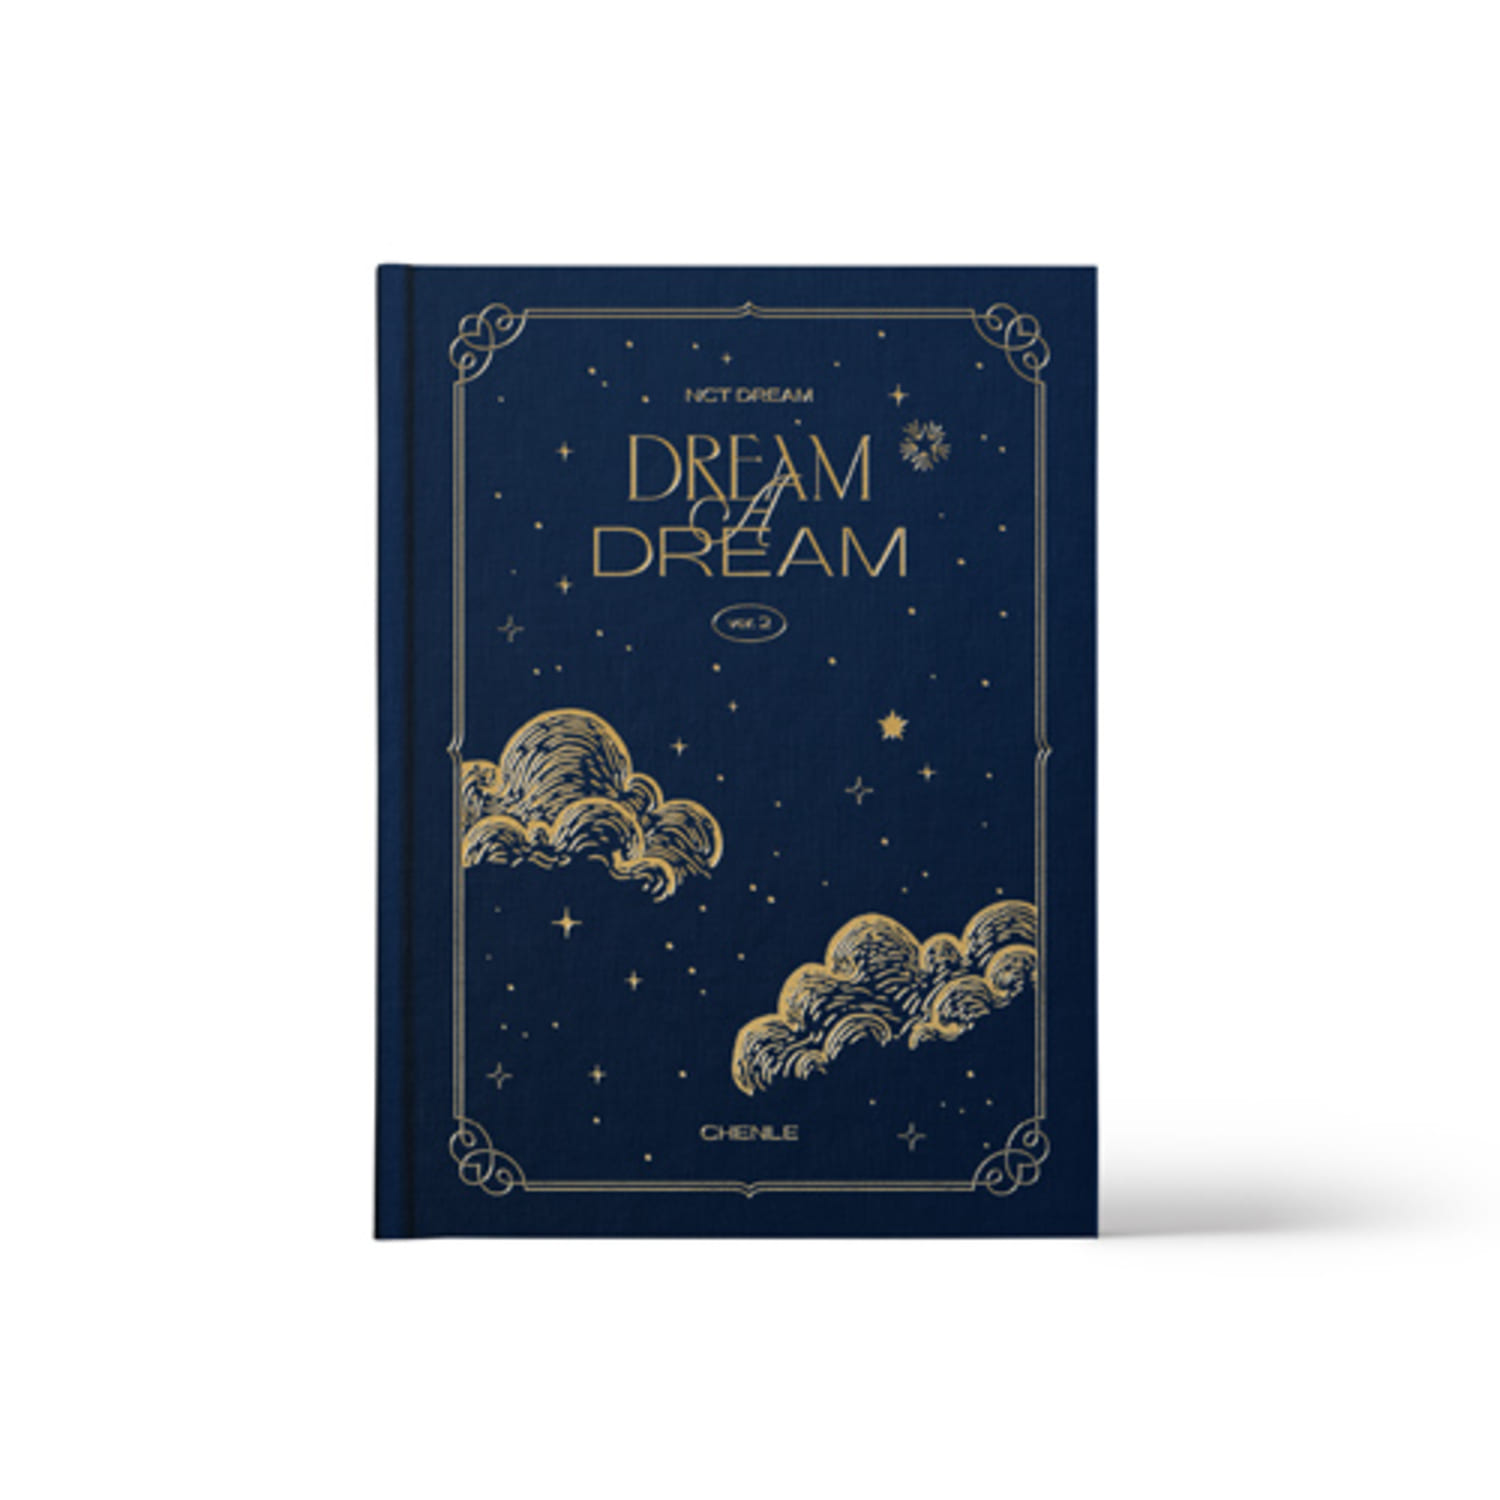 [교환반품불가]NCT DREAM  - (CHENLE) NCT DREAM PHOTO BOOK  [DREAM A DREAM ver.2]